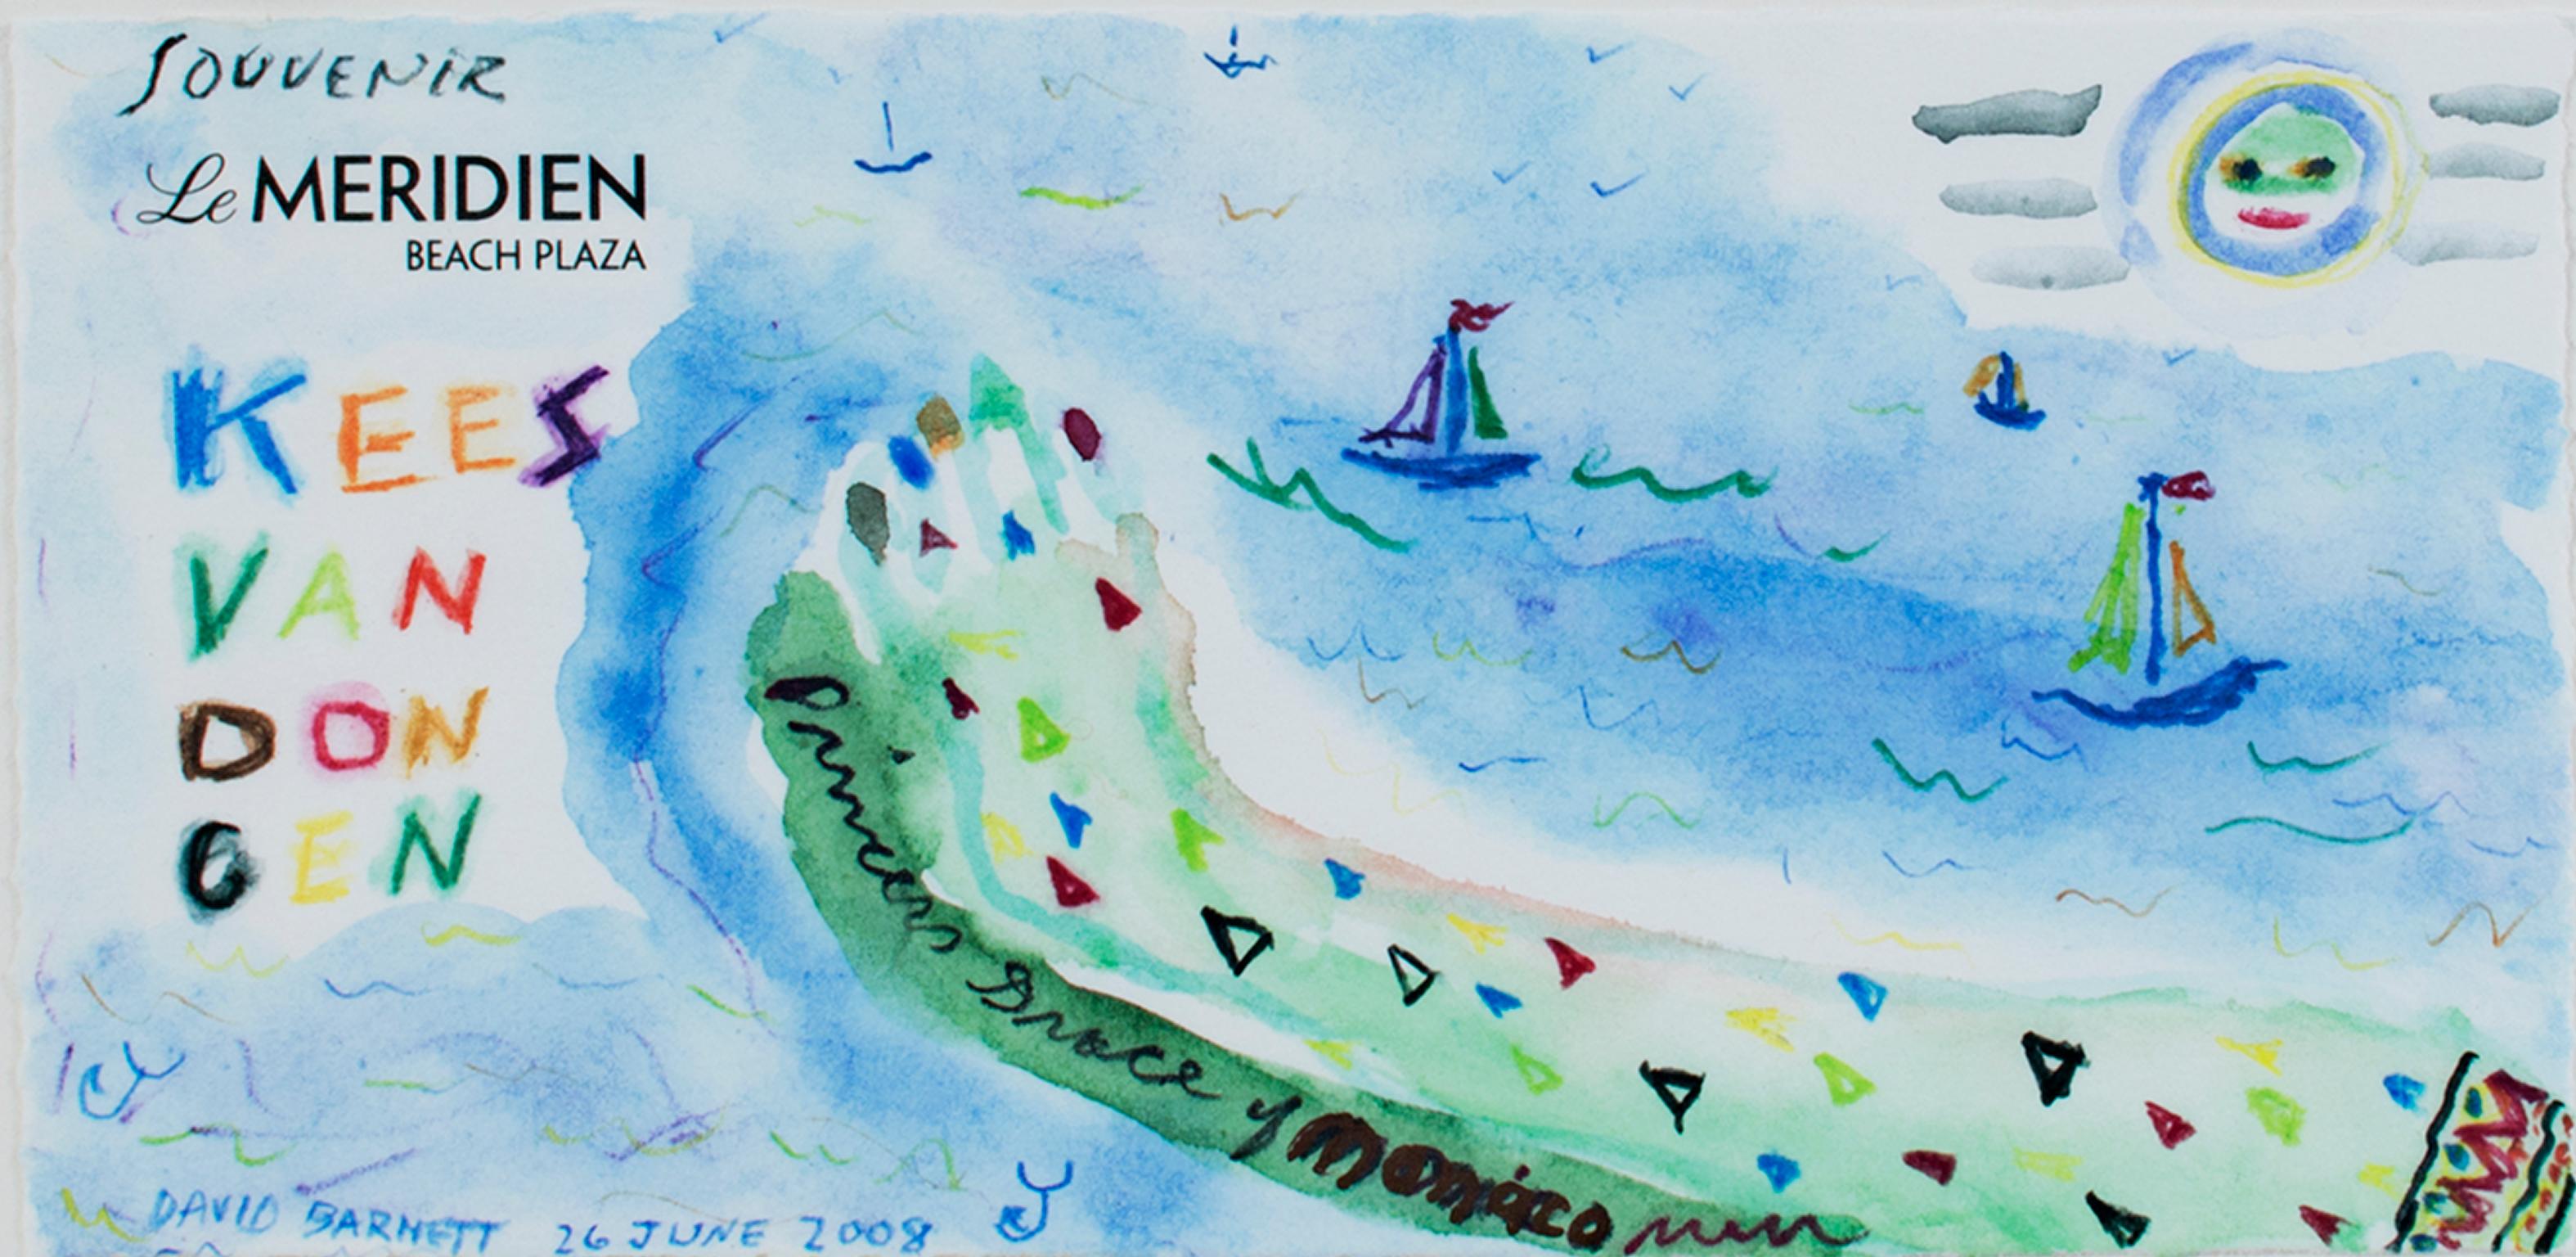 "Hommage an Kees Van Dongen: Souvenir Le Meridien" ist ein Originalwerk in Mischtechnik von David Barnett, signiert unten links und rechts. Es wurde auf der Station des Hotels Le Meridien gemalt und zeigt eine abstrakte Darstellung des Strandes der